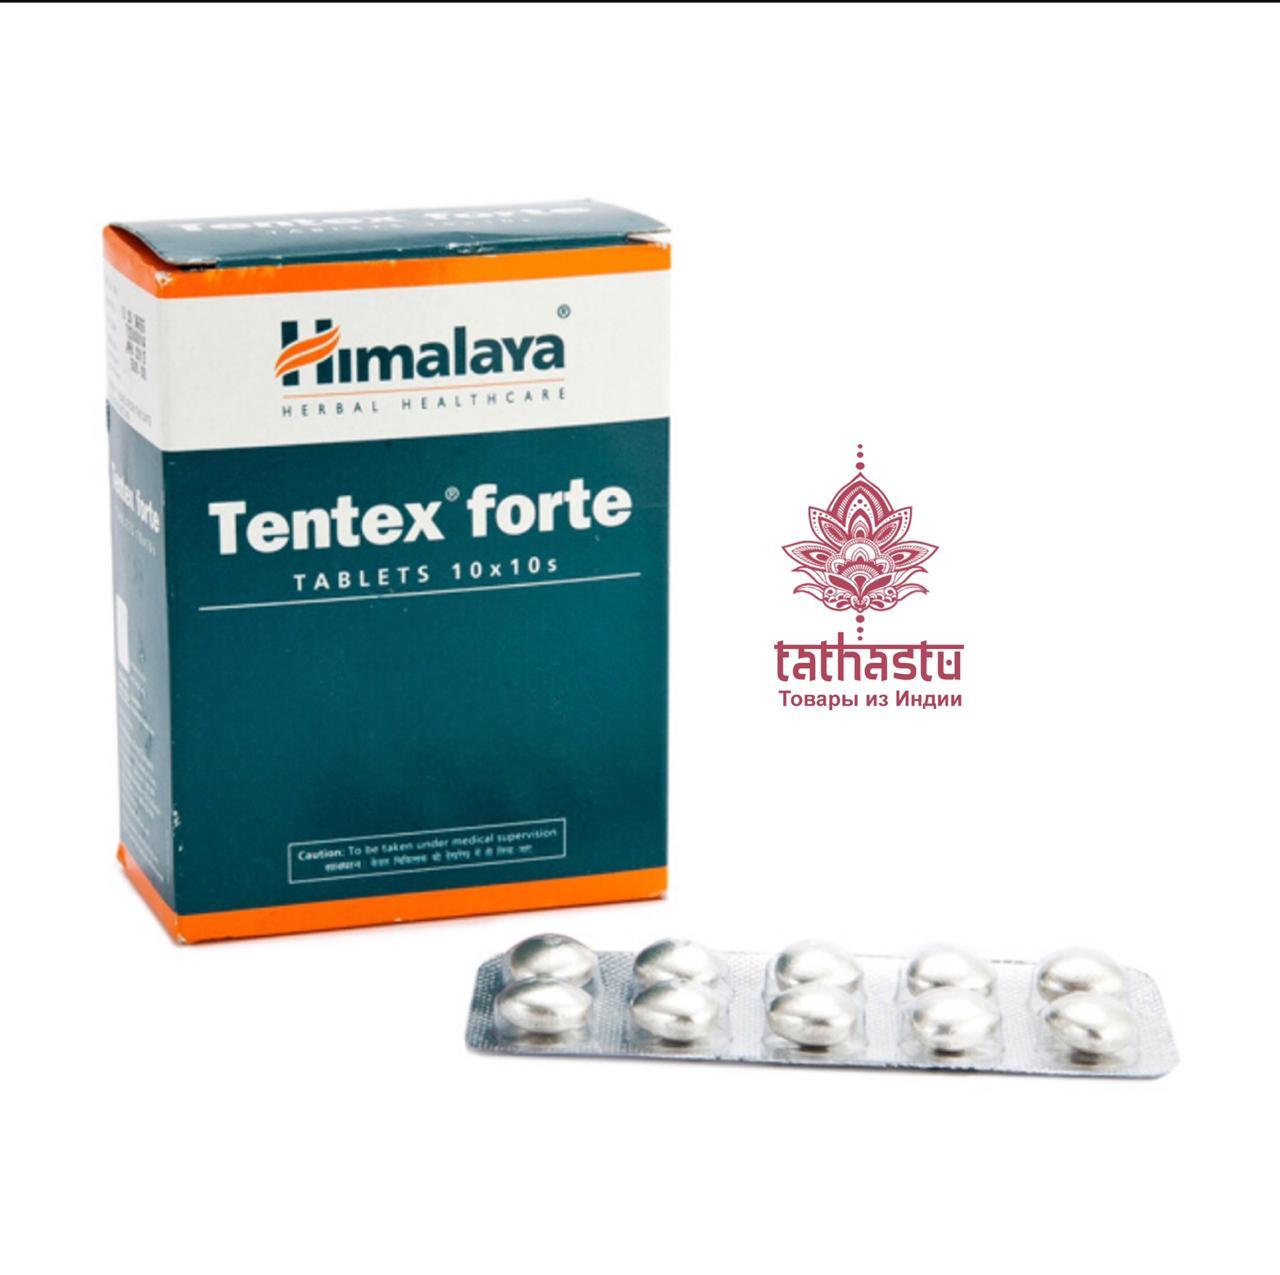 Тантекс Форте – для поддержания мужского здоровья и повышения потенции. Tathastu товары и индии